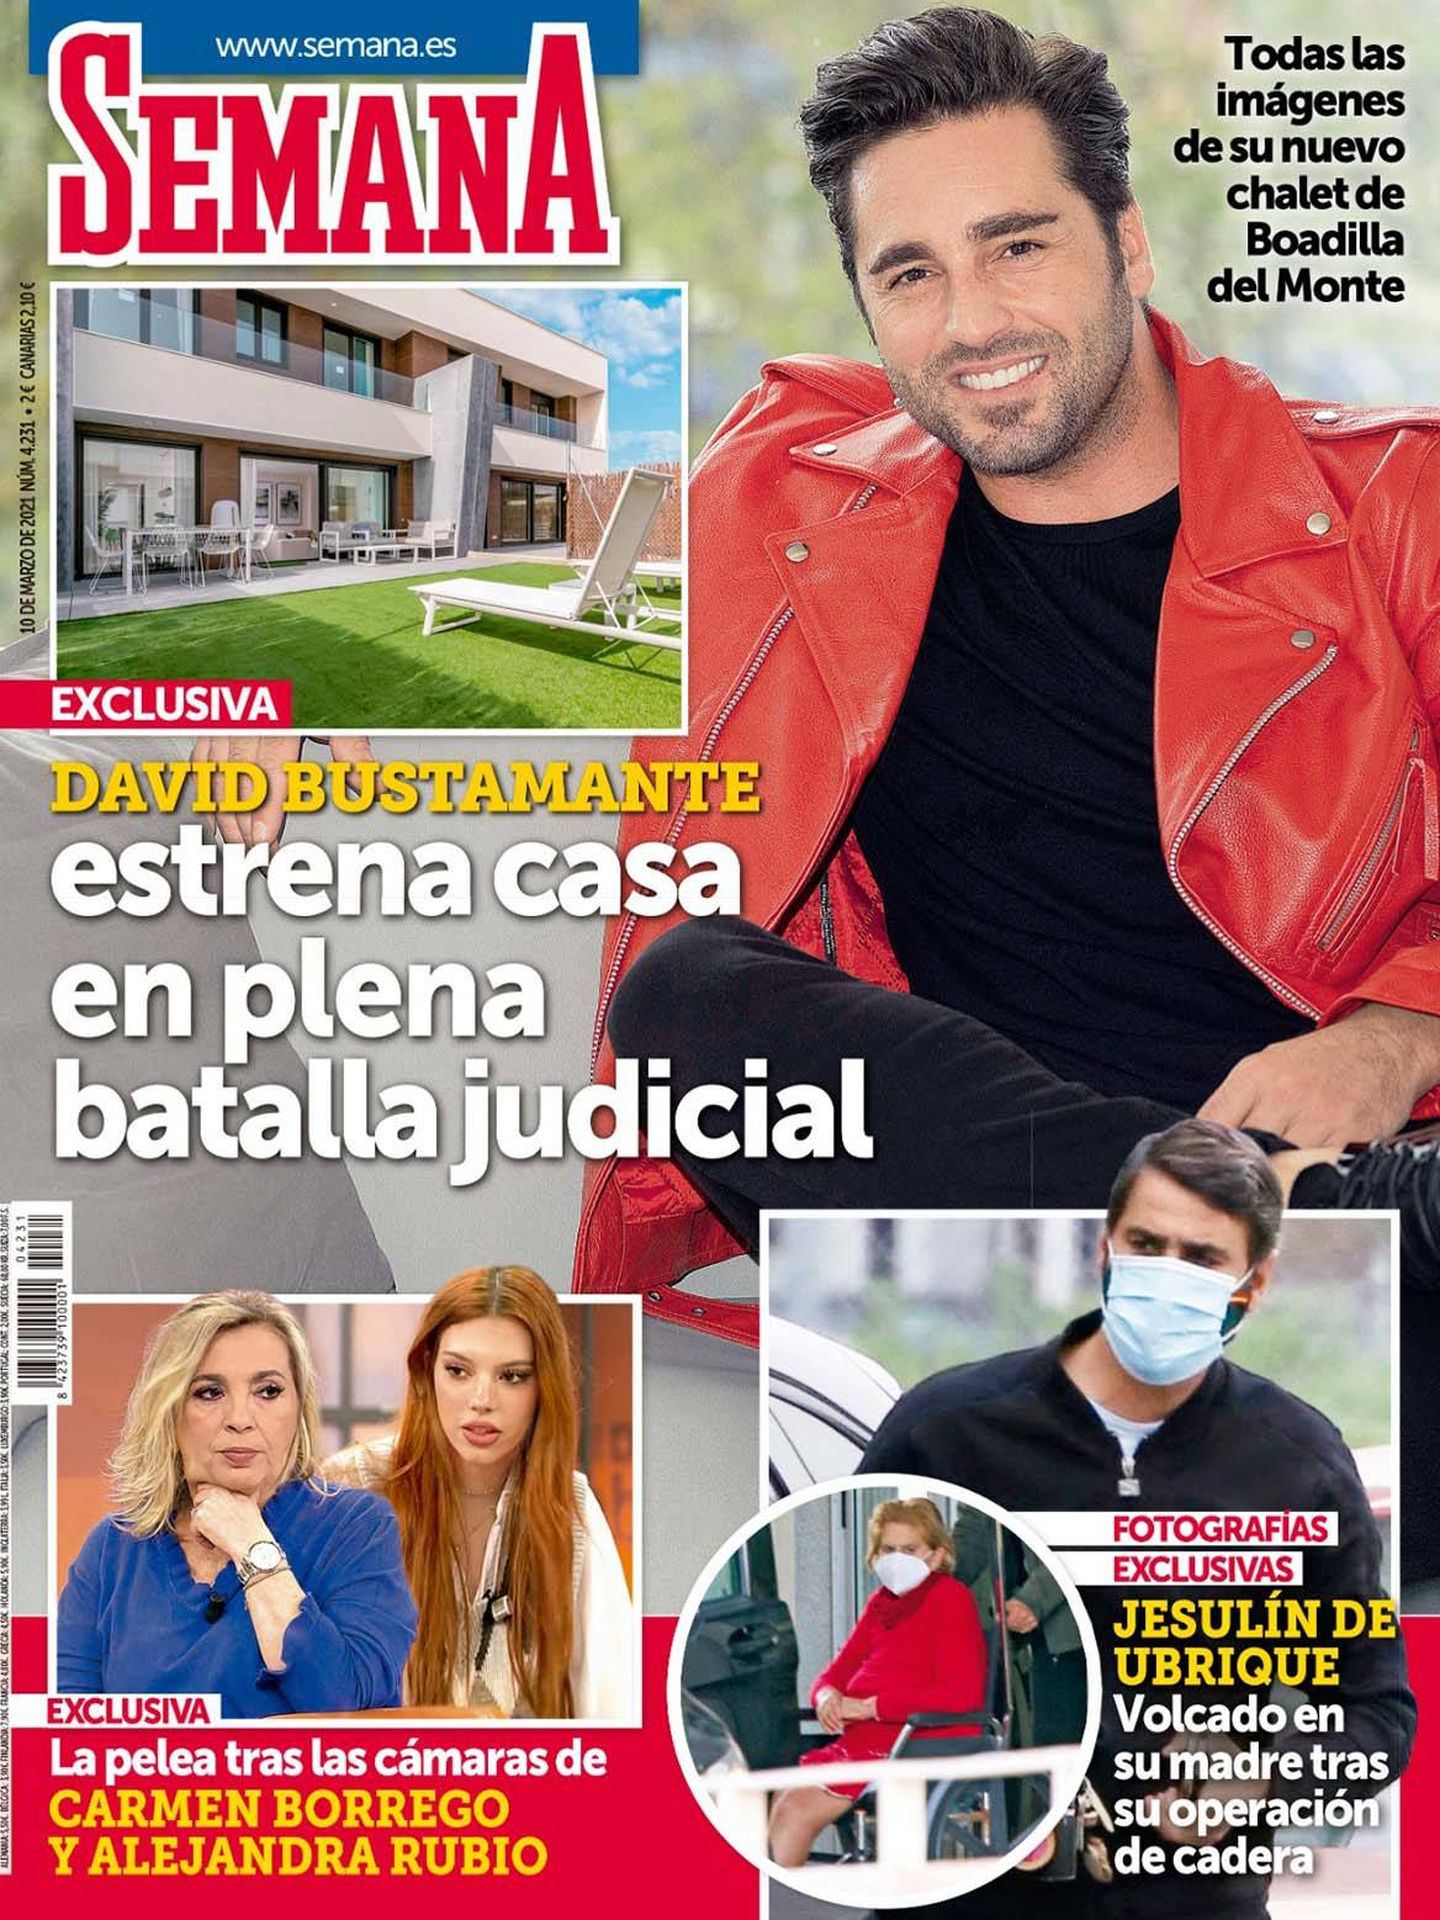  La portada de 'Semana' con la nueva casa de Bustamante.